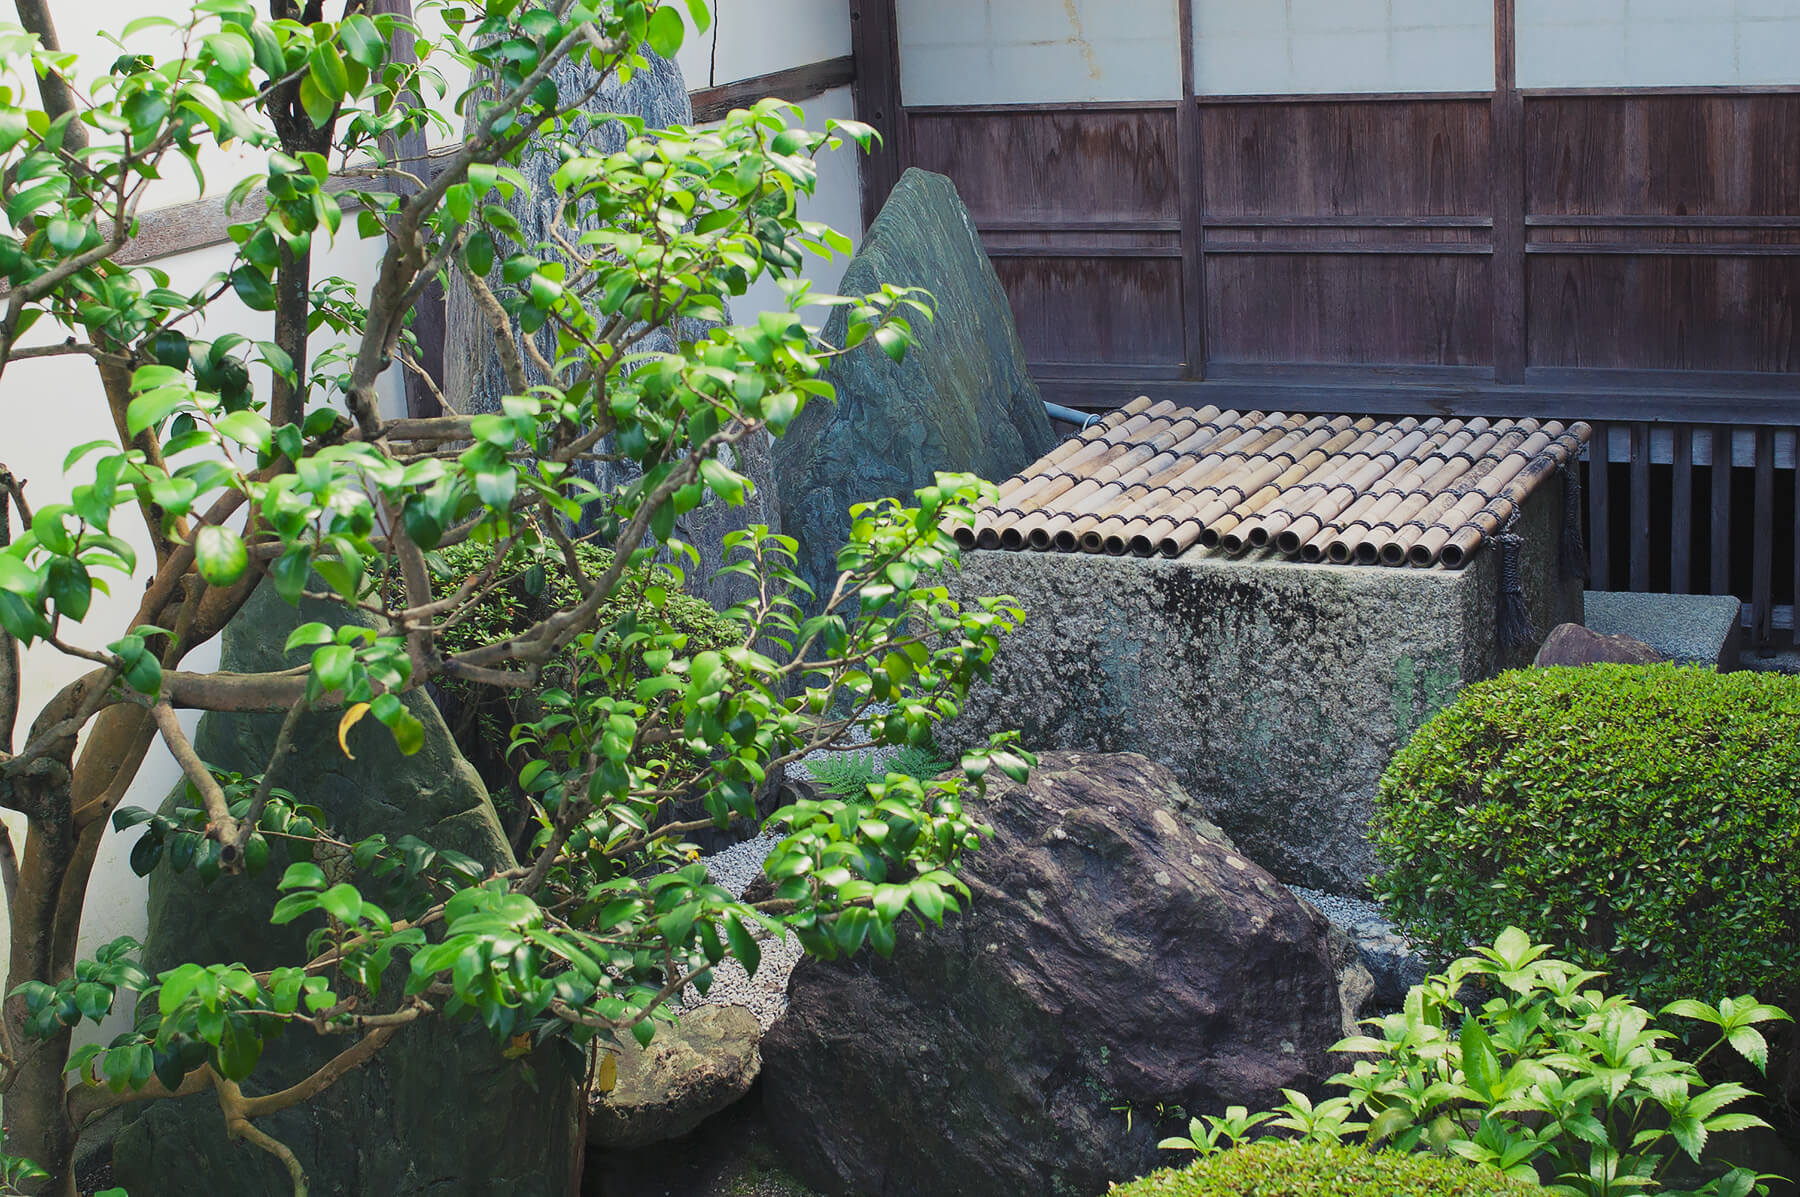 
          京都「妙心寺桂春院」の庭園写真2
      